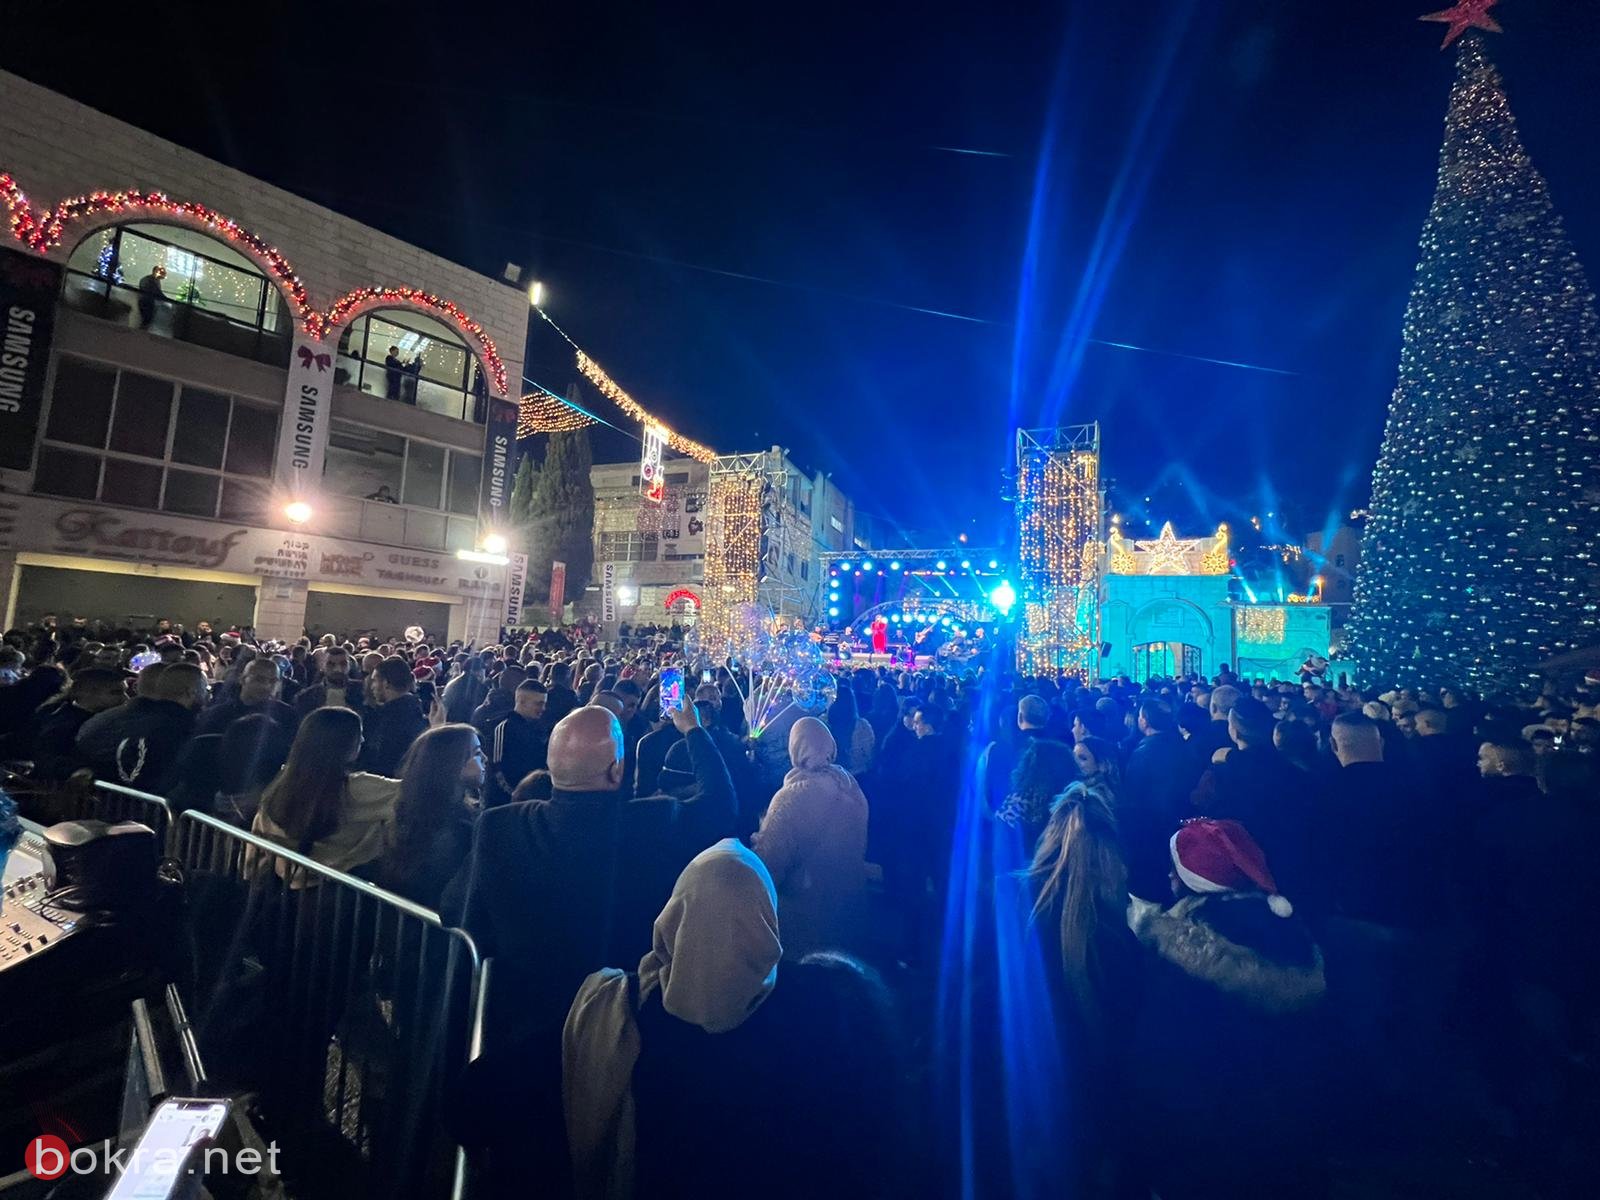 الناصرة: الاف المشاركين في احتفال اضاءة شجرة عيد الميلاد في ساحة العين-5